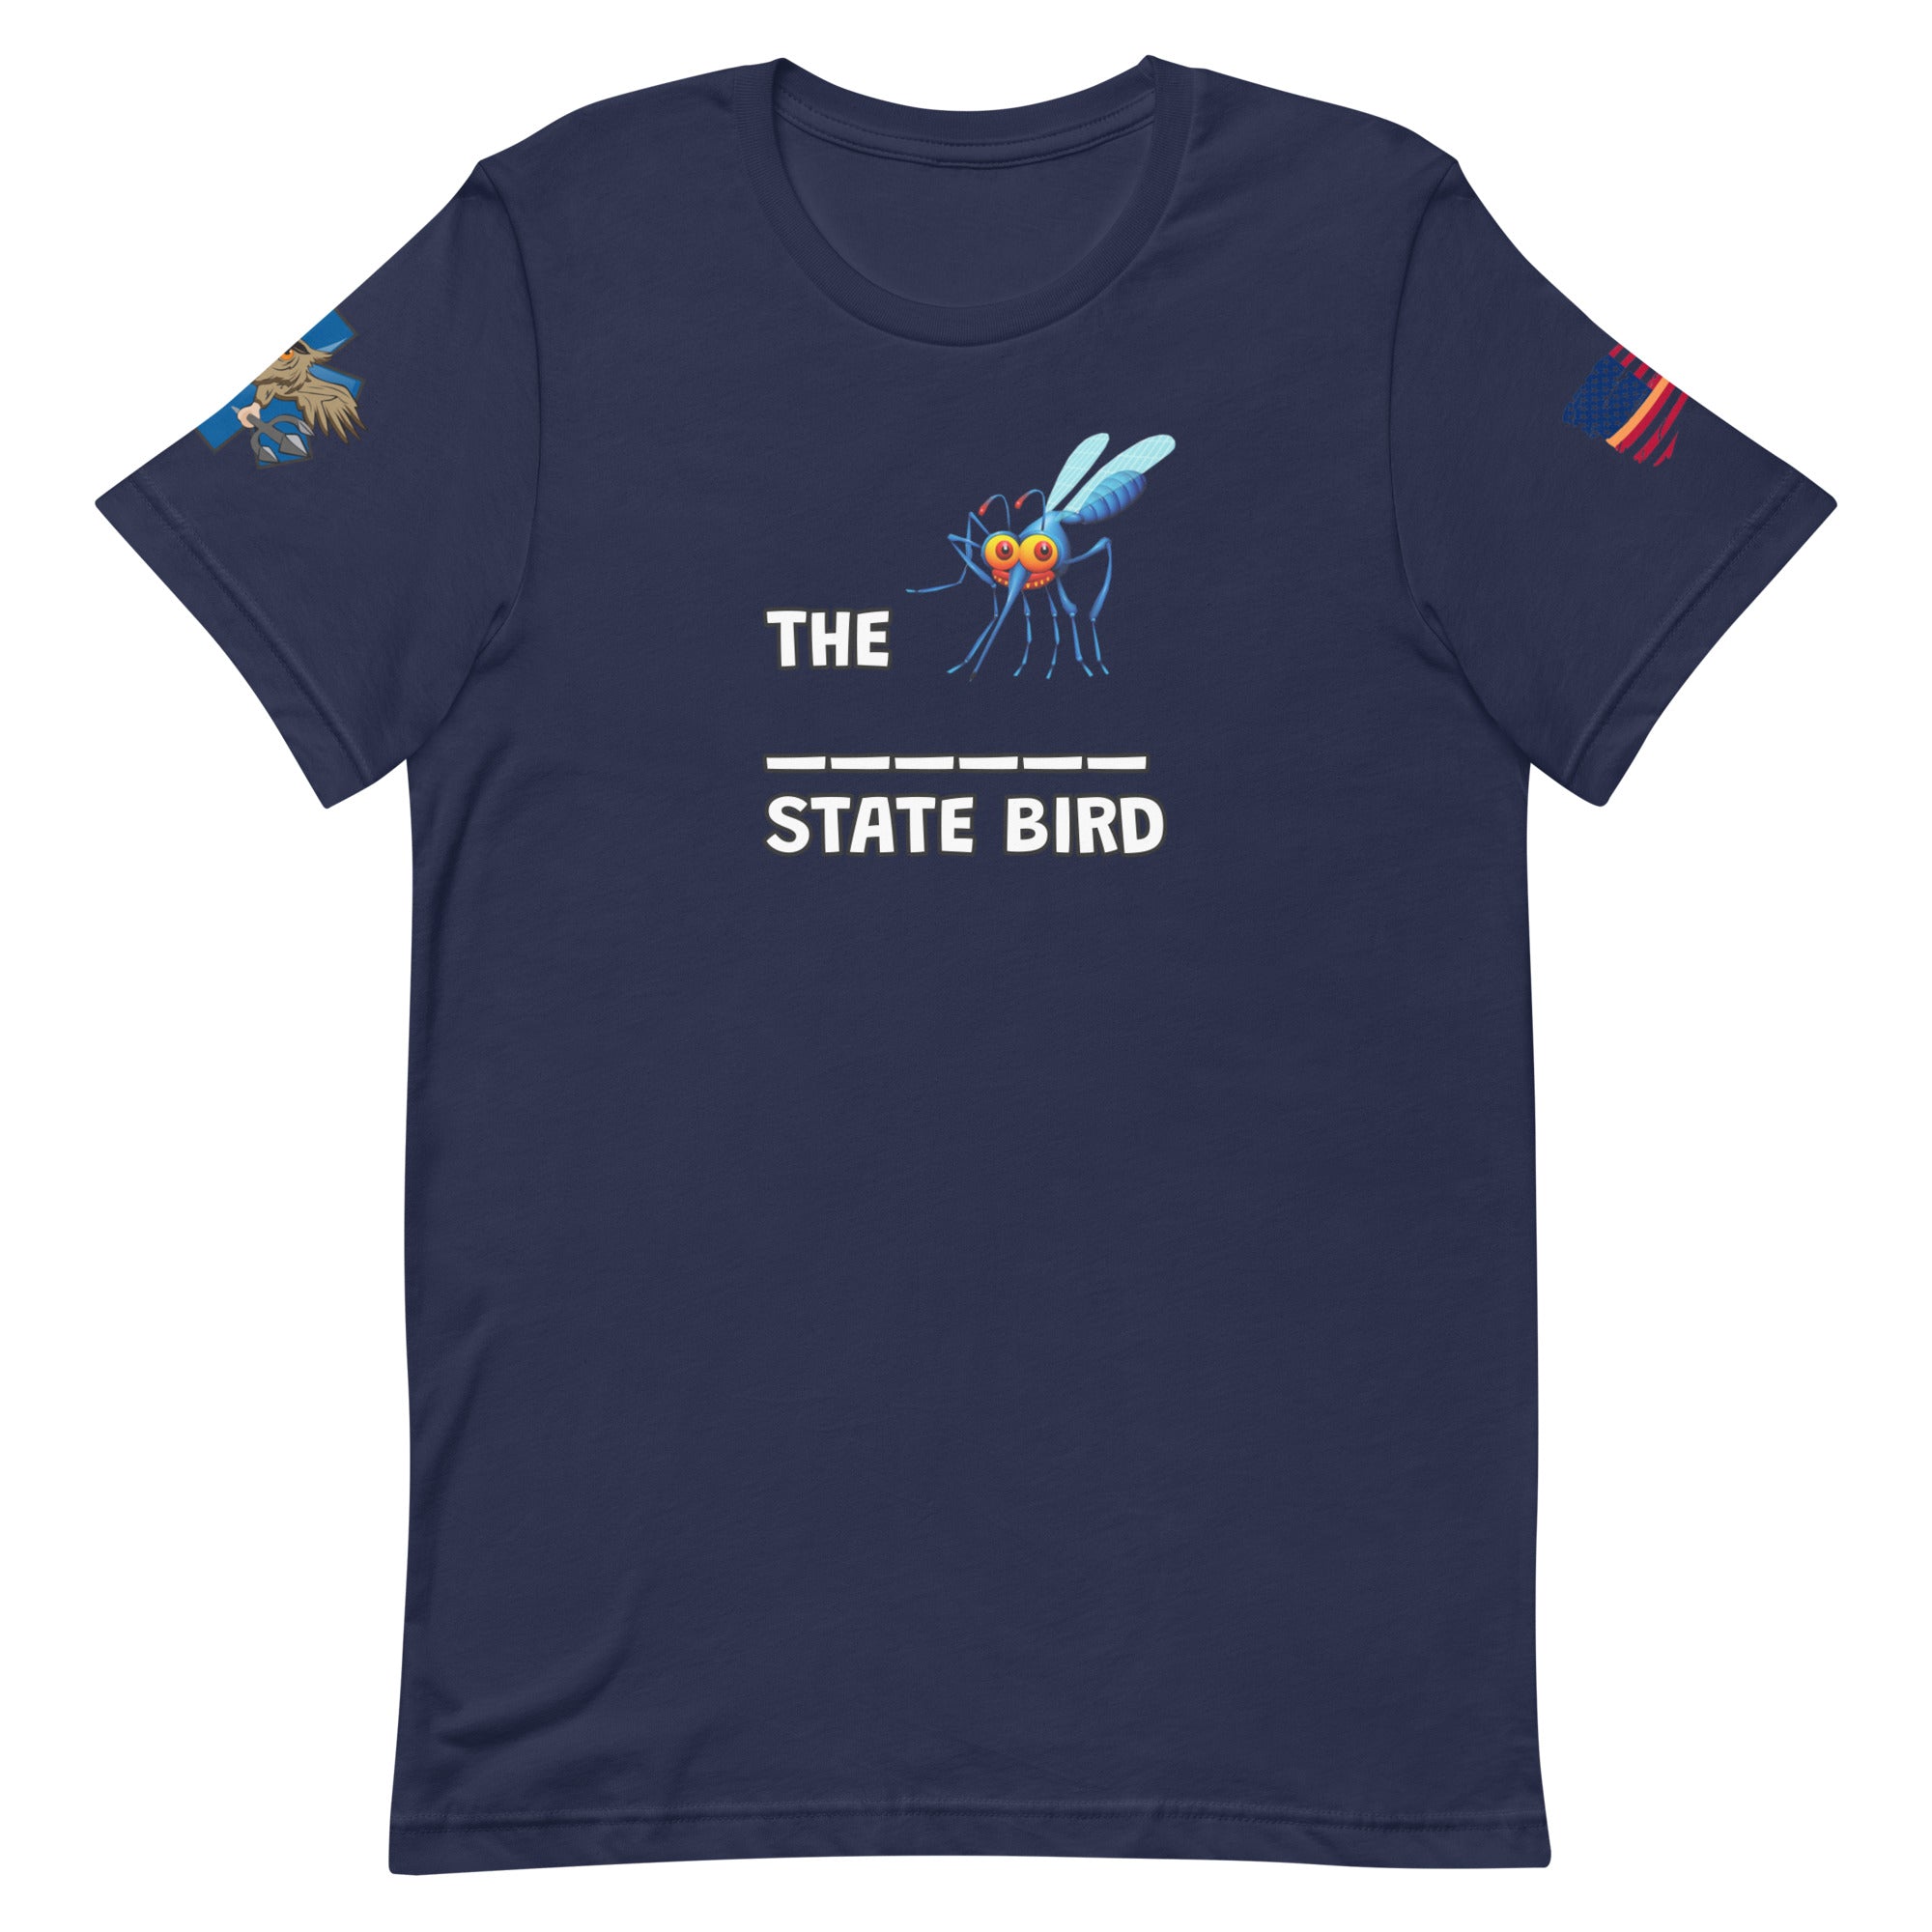 'State Bird' t-shirt